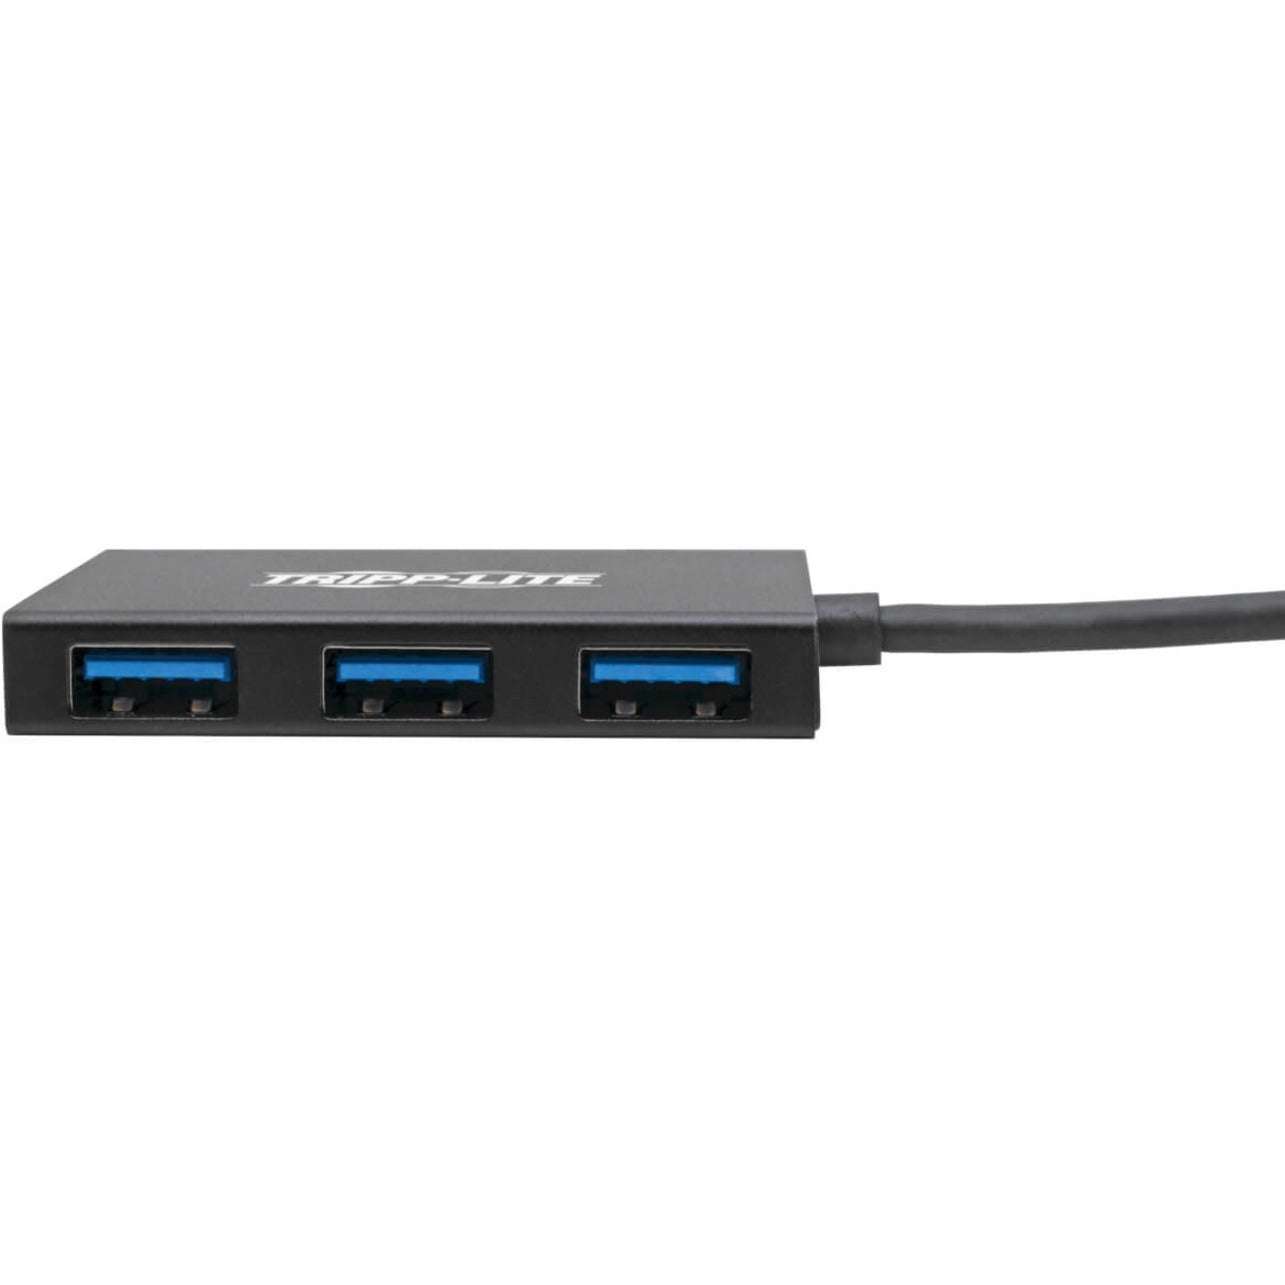 Tripp Lite U460-004-4A-AL USB 3.1 C Hub, Aluminum Housing, 4-Port Compact USB 3.1